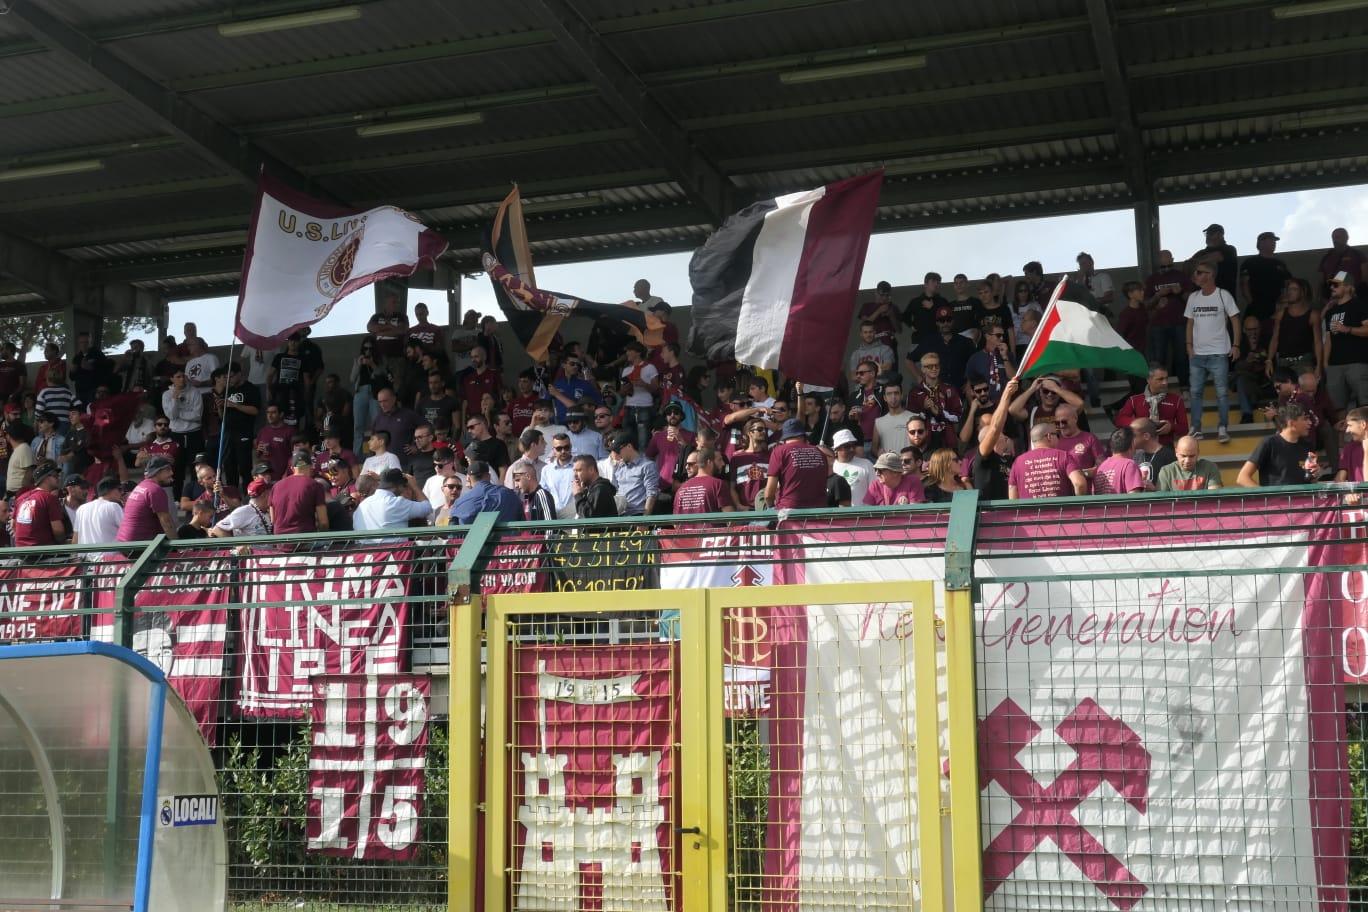 Real Forte Querceta-Livorno 0-1, rivivere la diretta web del match.